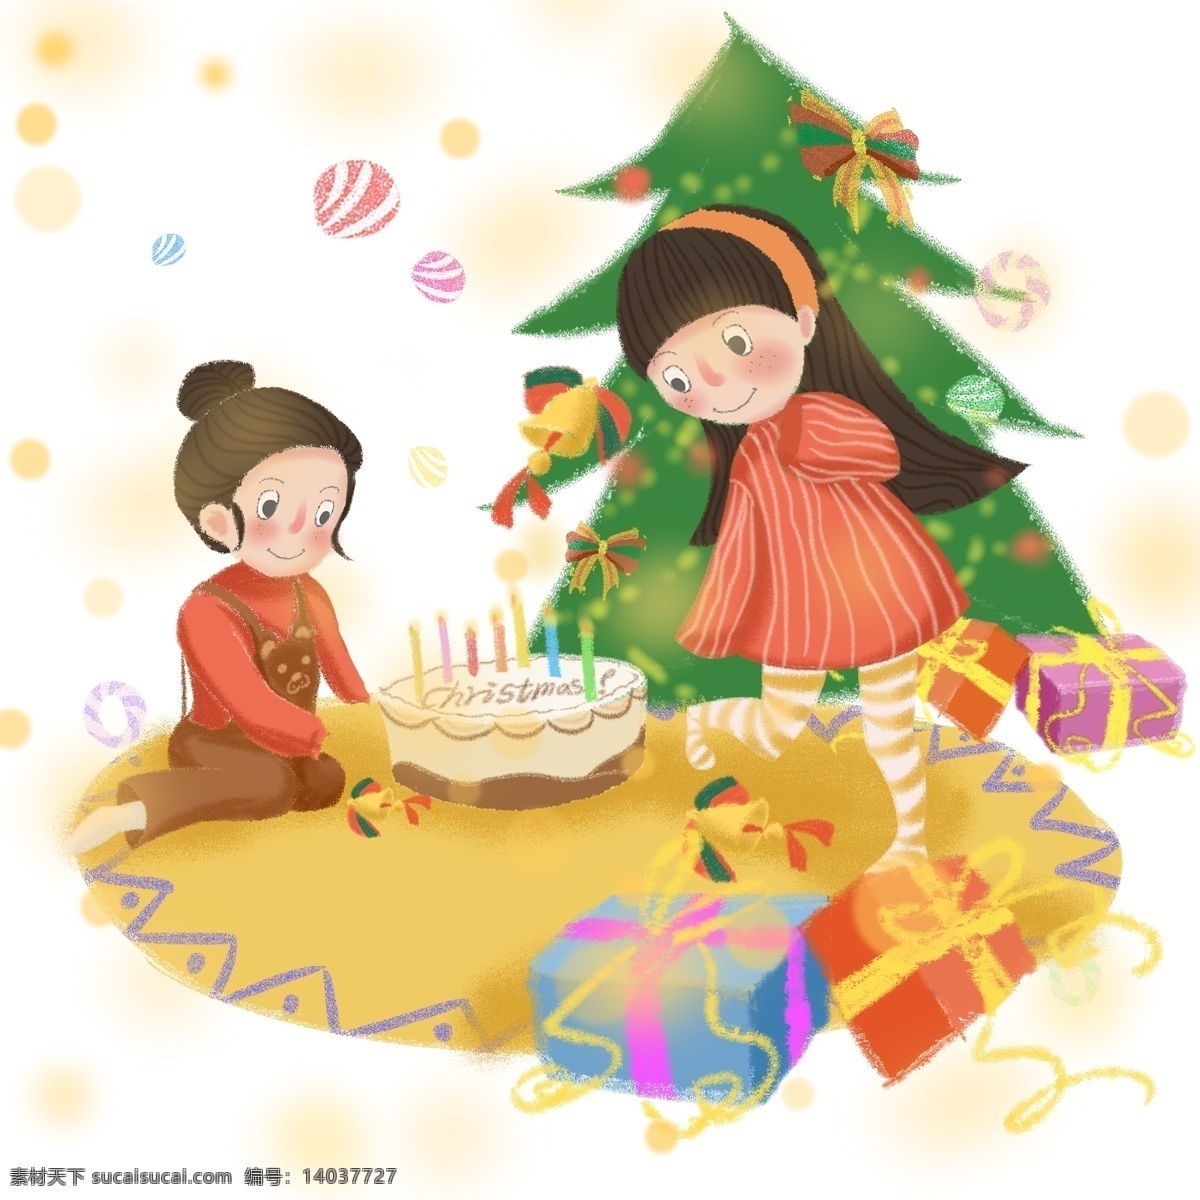 可爱 萝 莉 许愿 圣诞 图 圣诞礼物 巧克力 蛋糕 闪闪 梦幻 圣诞树 圣诞温暖光晕 儿童 插 画风 七彩铃铛